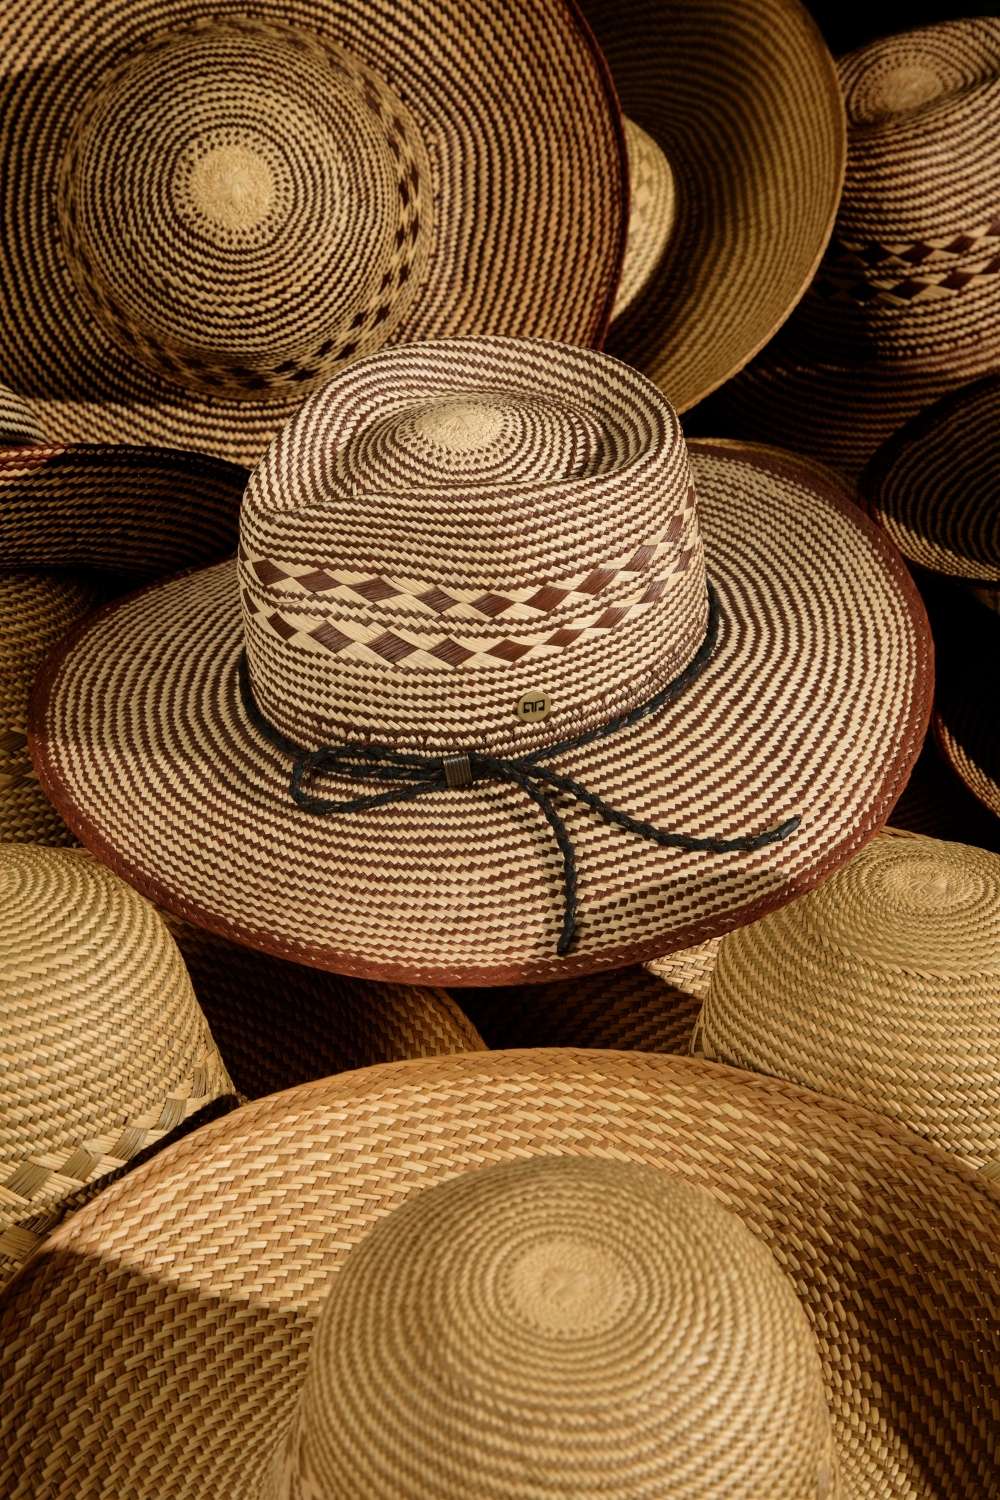 still life scuro Cappello originale in paglia Panama Ecuador da uomo. Copricapo artigianale maschile in stile cowboy o western texano simile modello fedora con tesa/falda larga.